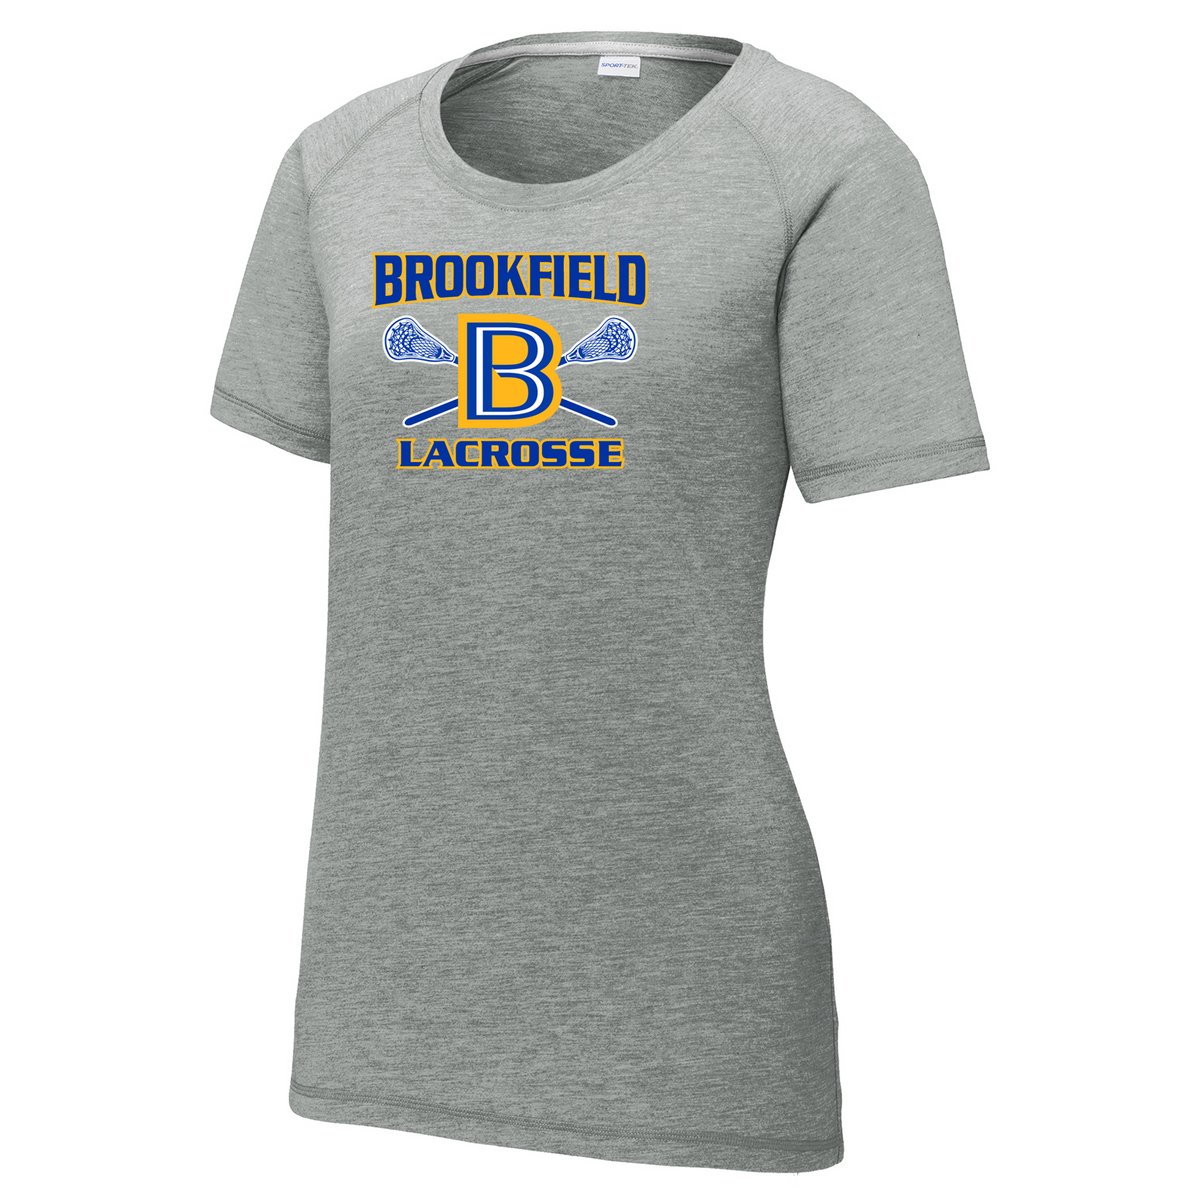 Brookfield Lacrosse Women's Raglan CottonTouch